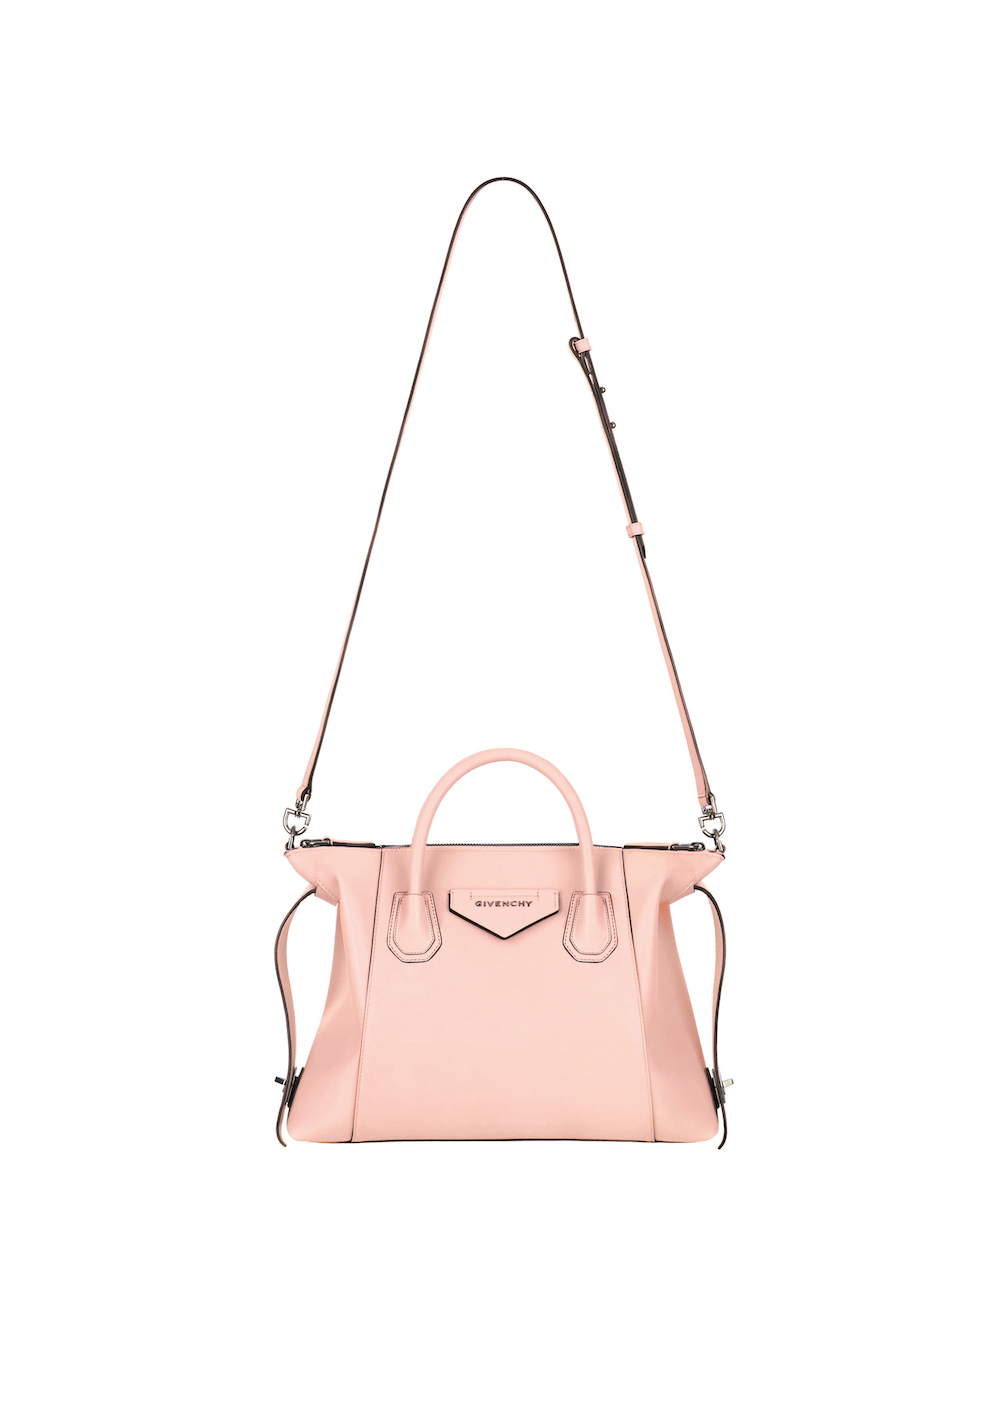 Givenchy gets a makeover - the Antigona Bag reinvented